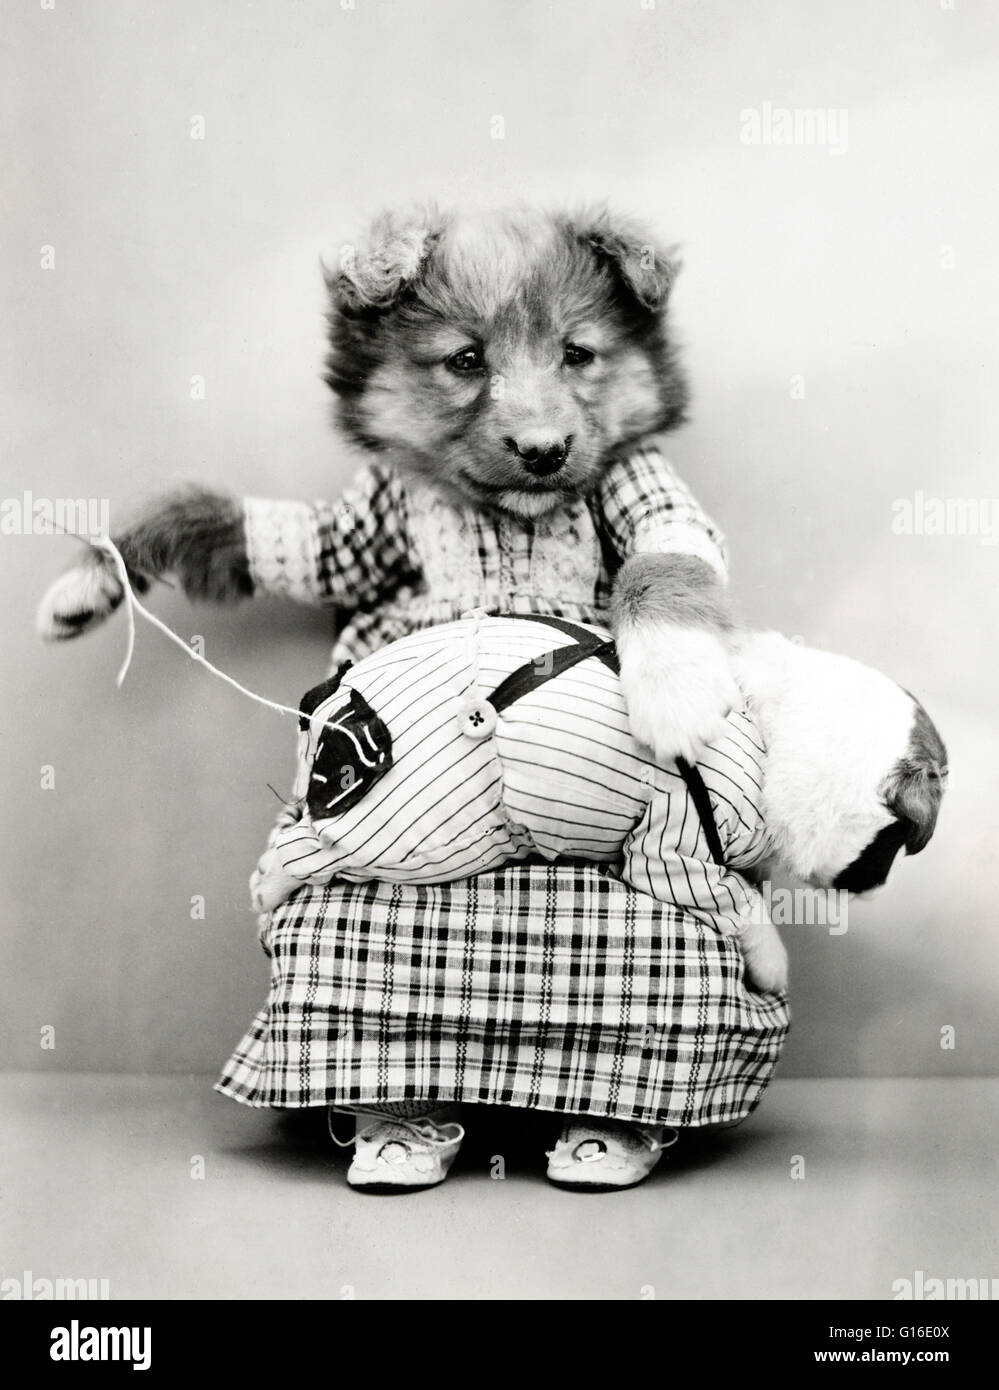 Unter dem Titel: "Patch-Work" zeigt einen Welpen trägt ein Kleid und einen Fleck auf der Hose eines winzigen Welpen auf dem Schoß zu nähen. Harry Whittier befreit (1879-1953) war ein US-amerikanischer Fotograf, der lebende Tiere gekleidet und posierte in menschlichen Situationen mit Requisiten fotografiert Stockfoto